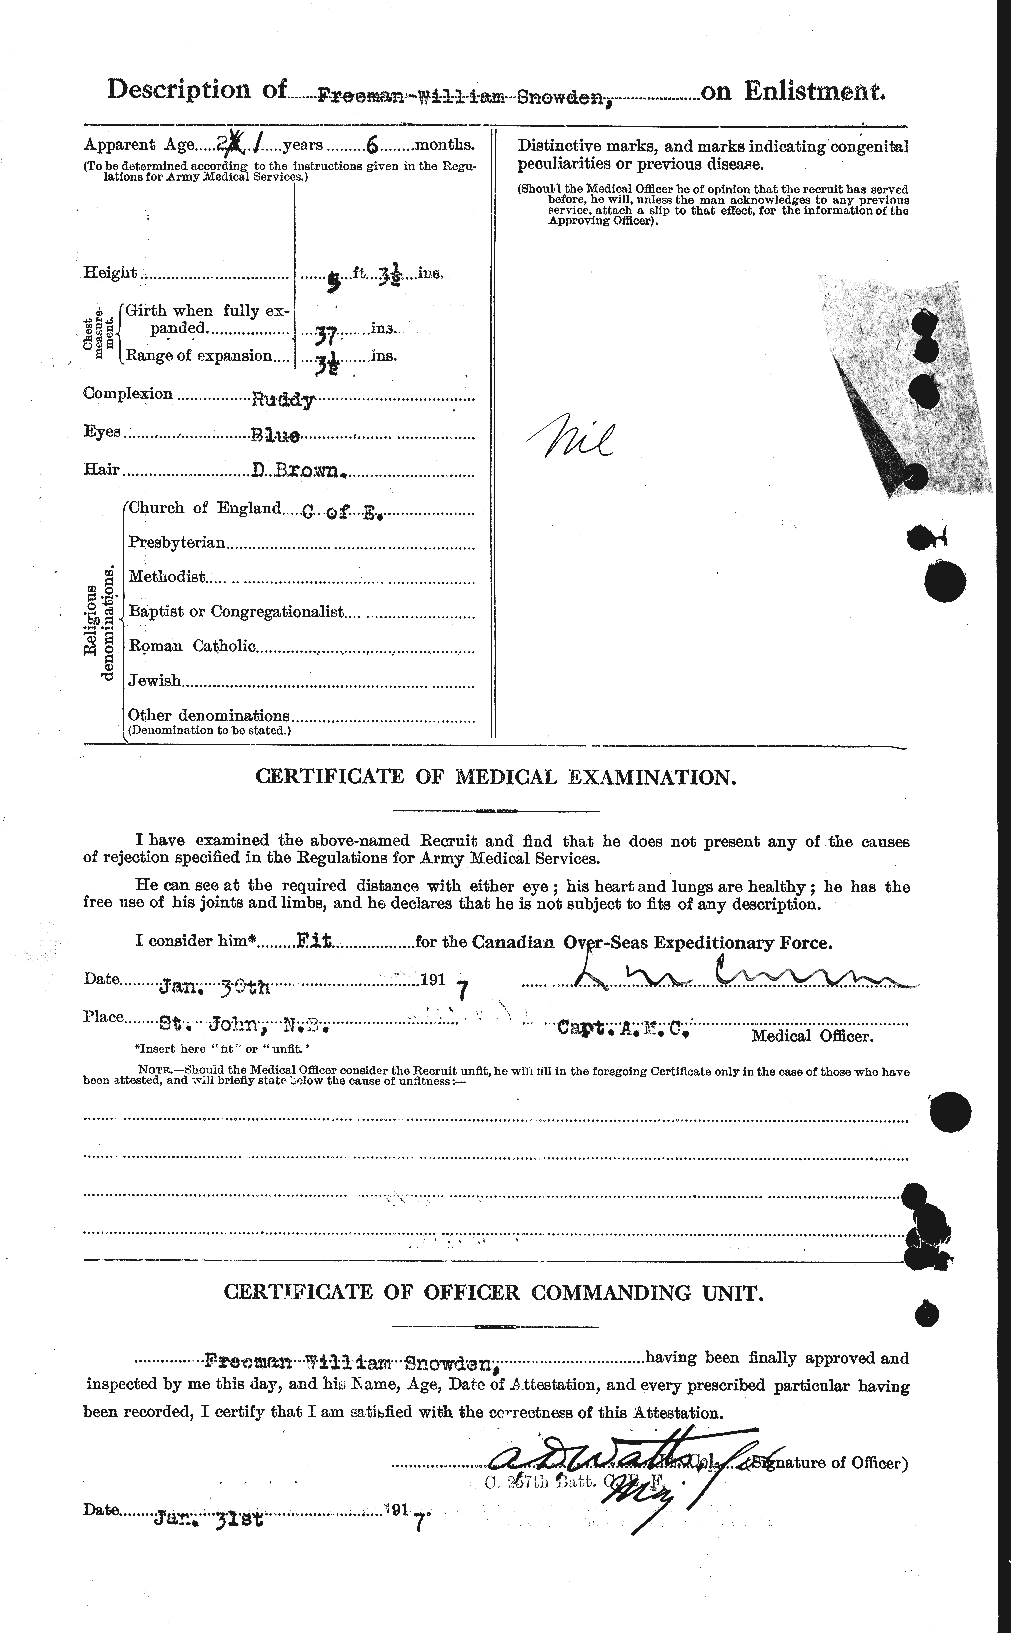 Dossiers du Personnel de la Première Guerre mondiale - CEC 109491b